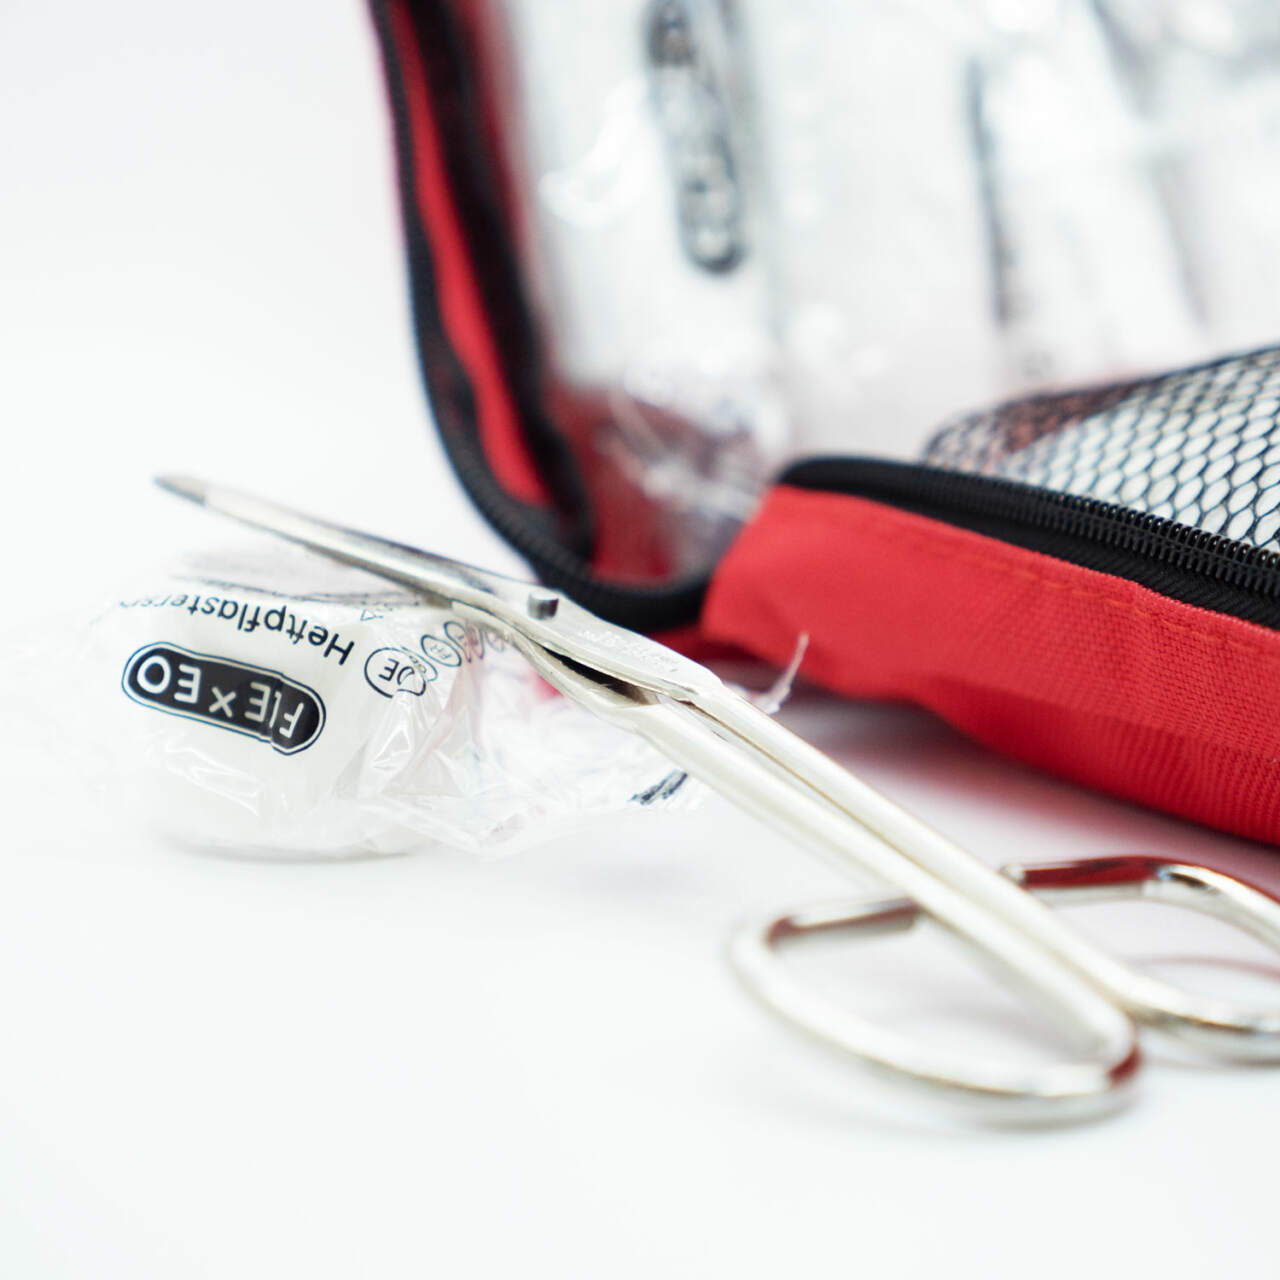 Actiomedic Outdoor Verbandtasche / Erste Hilfe Tasche Mit Klettlaschen